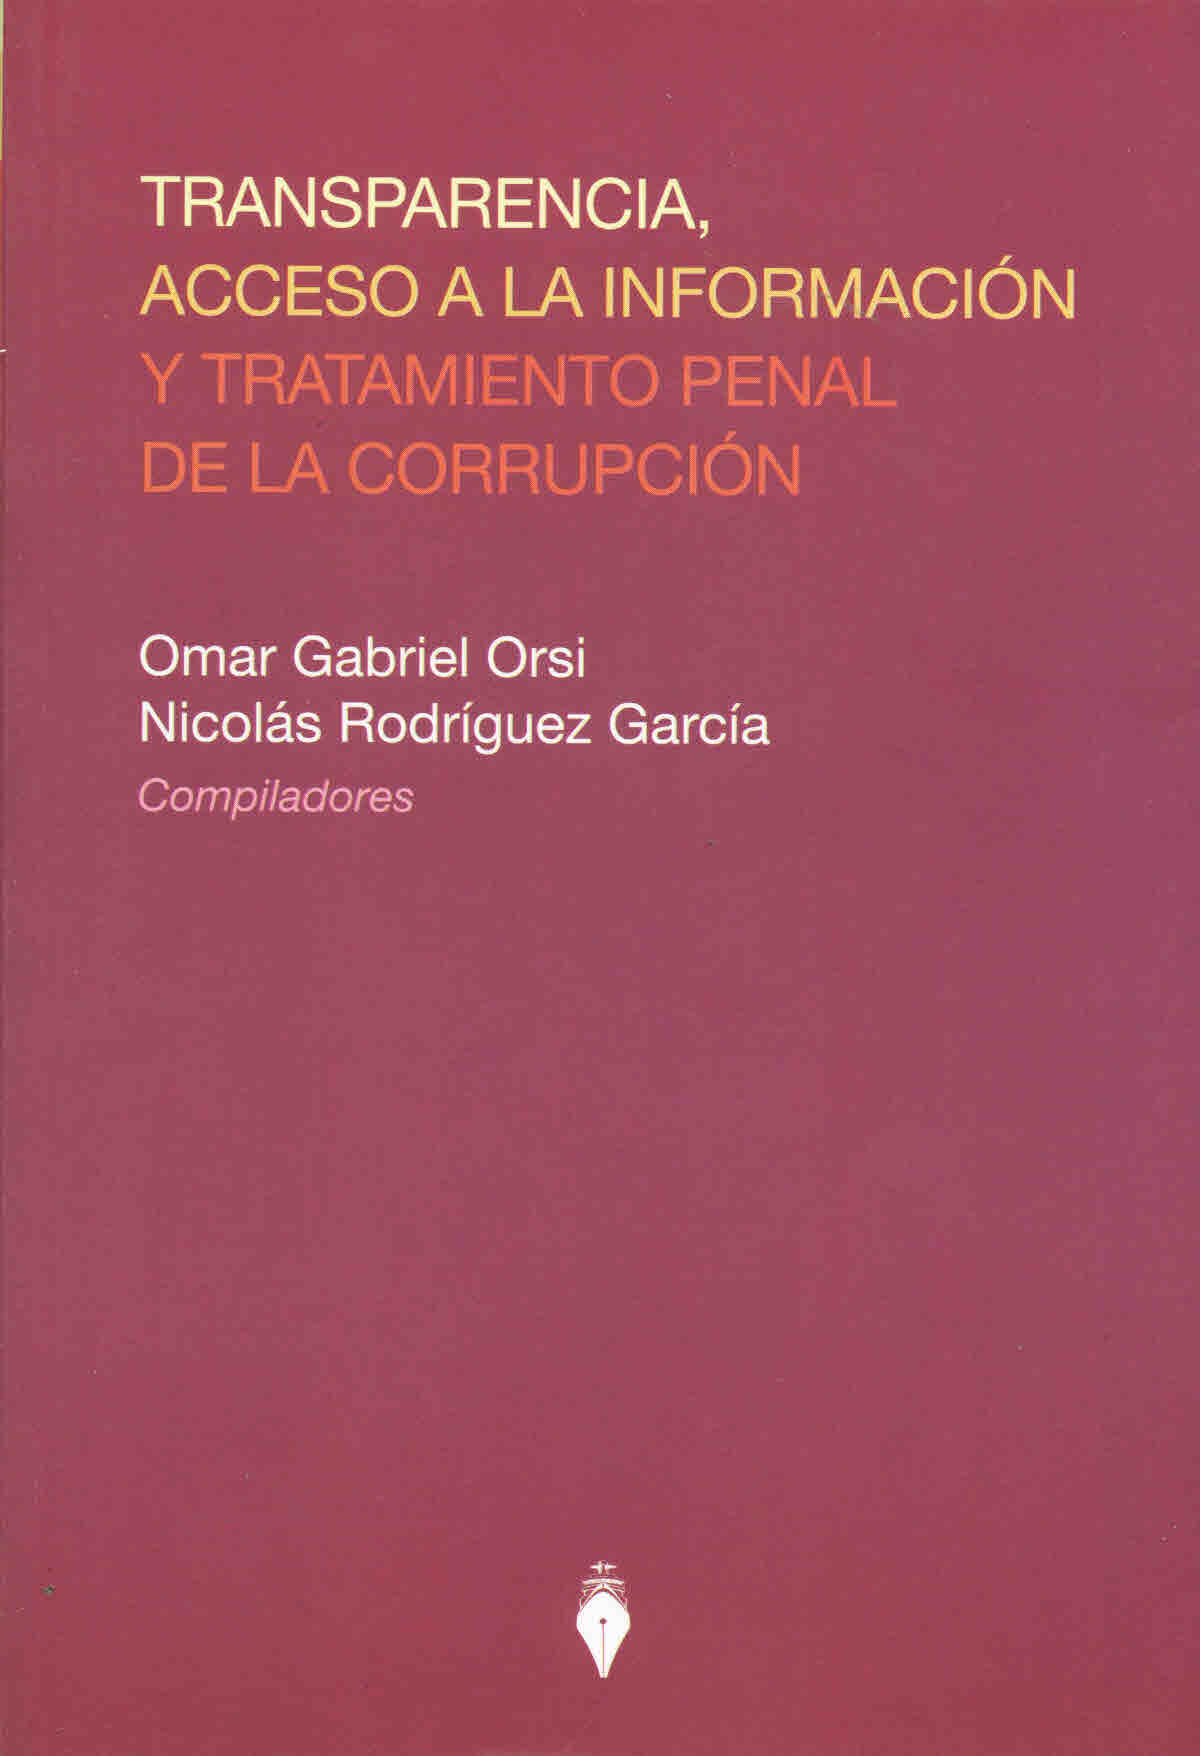 Transparencia, acceso a la información y tratamiento penal de la corrupción